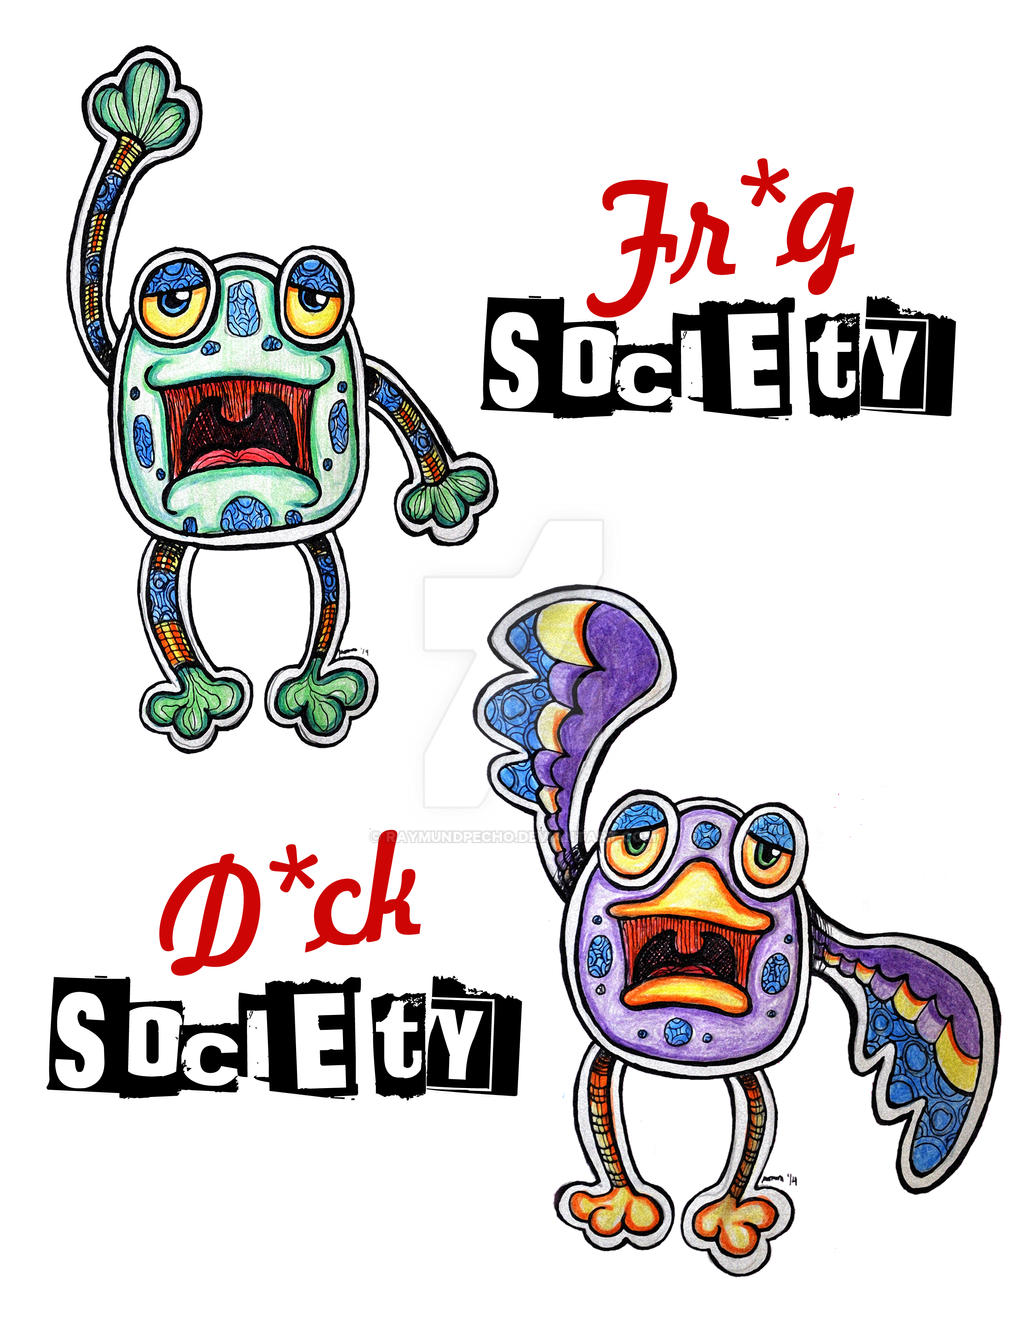 Fr*g Society, D*ck Society